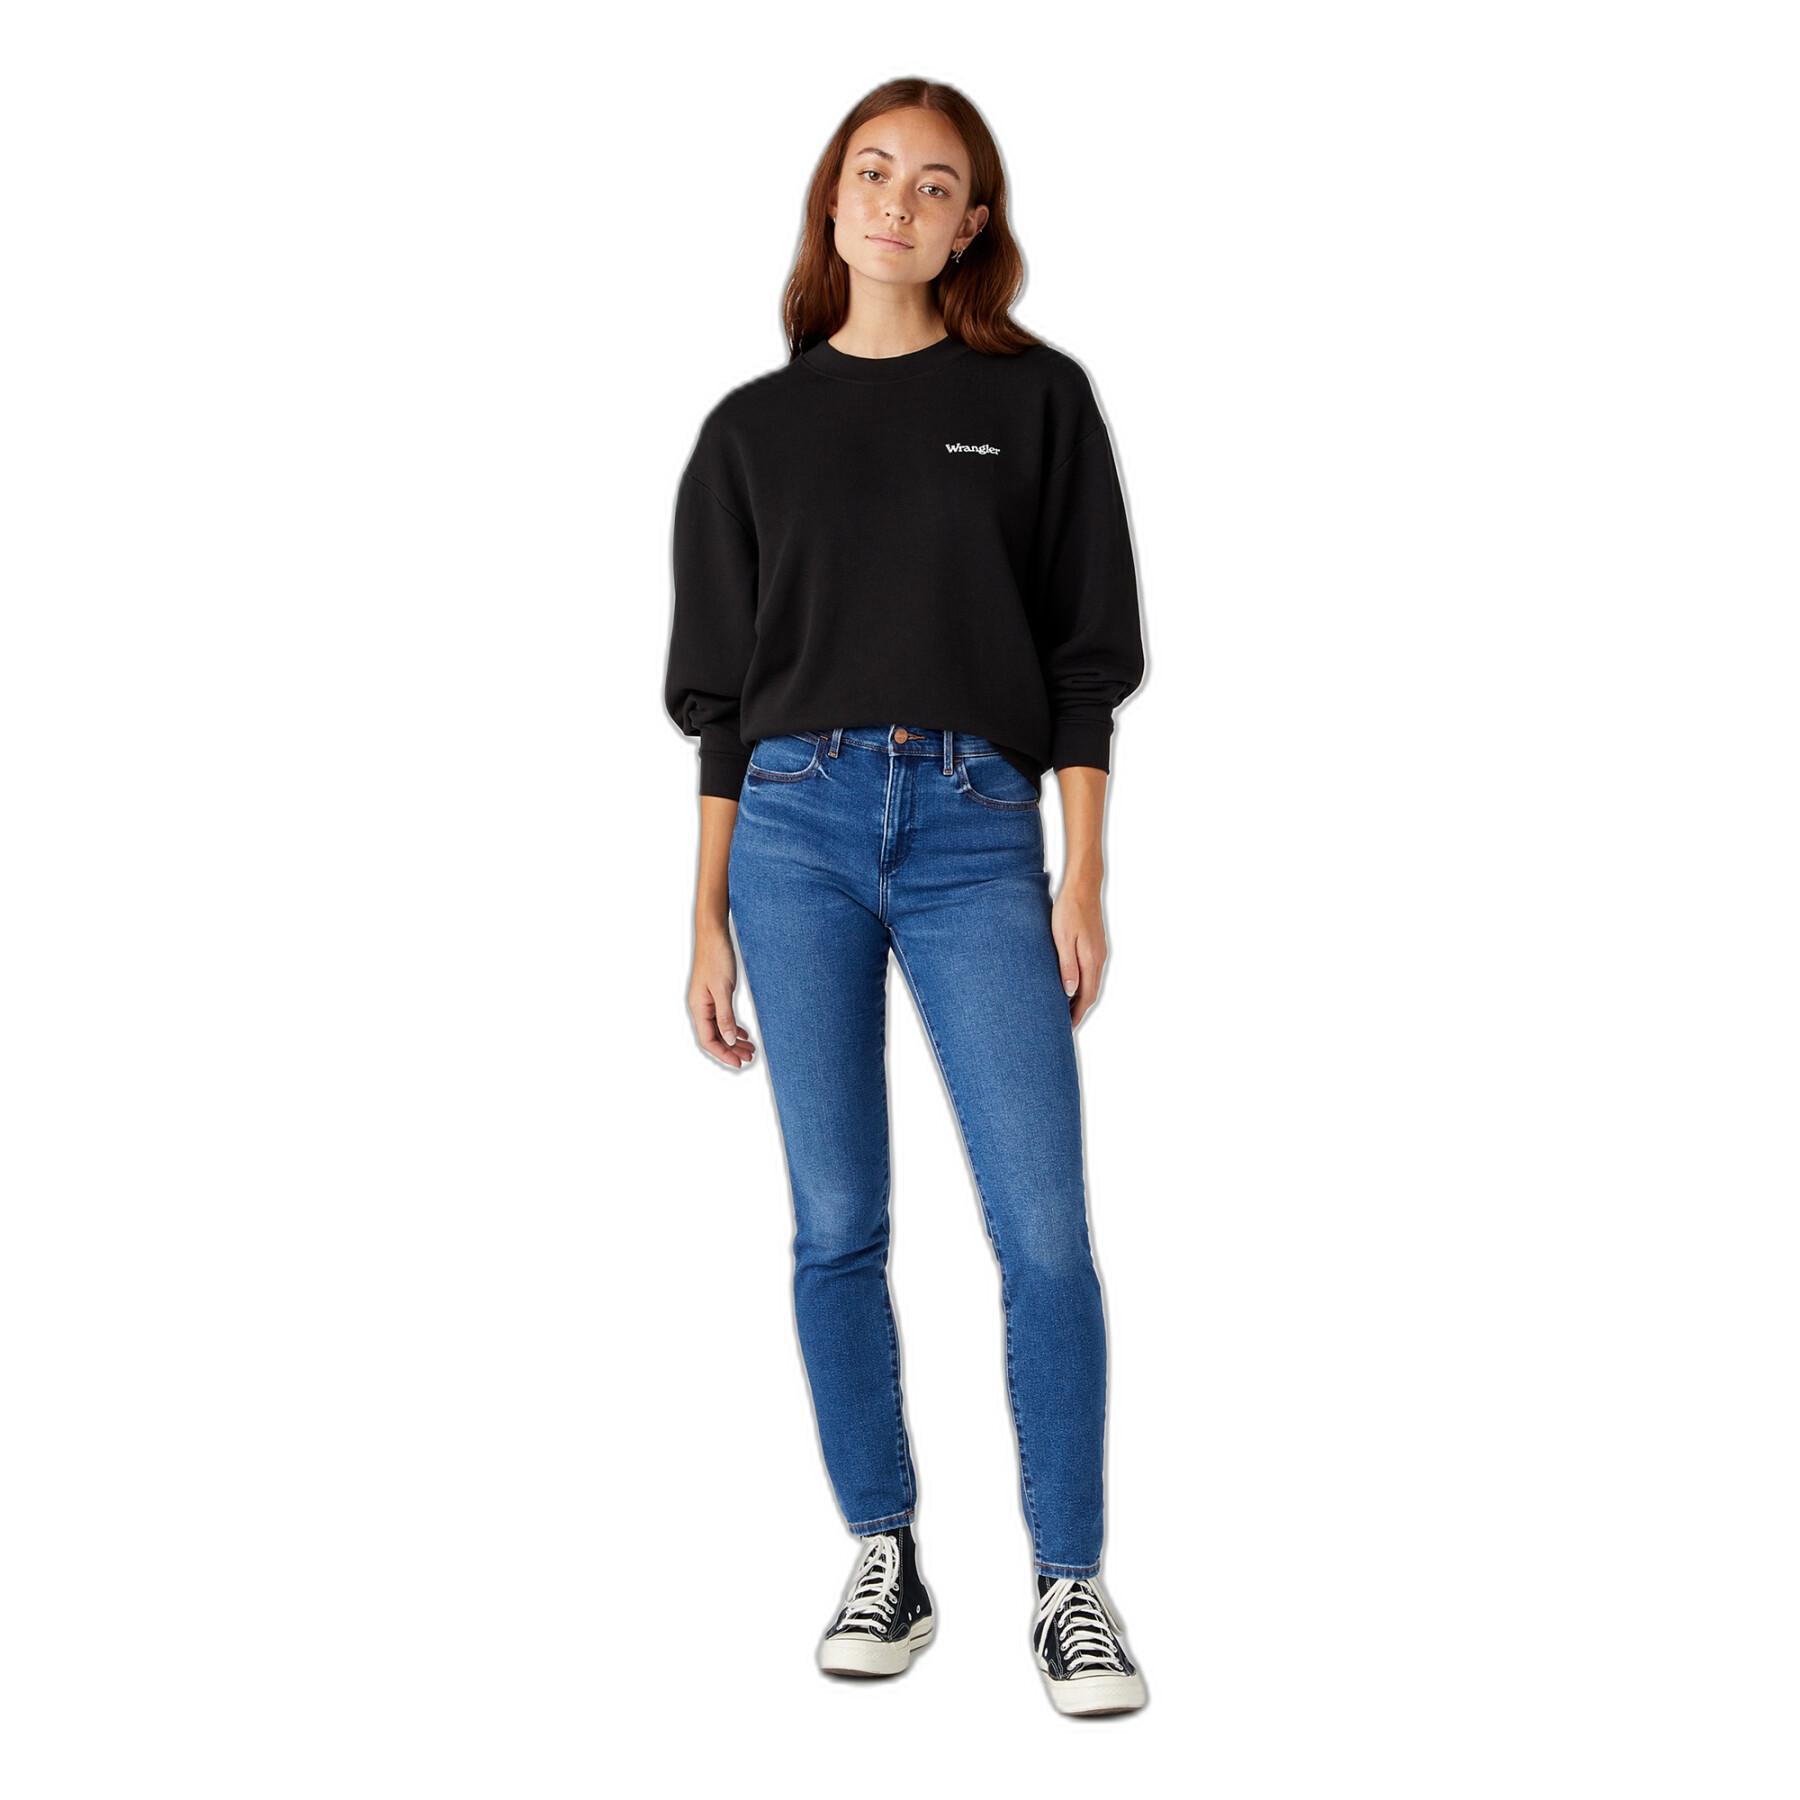 Women's high waist skinny jeans Wrangler